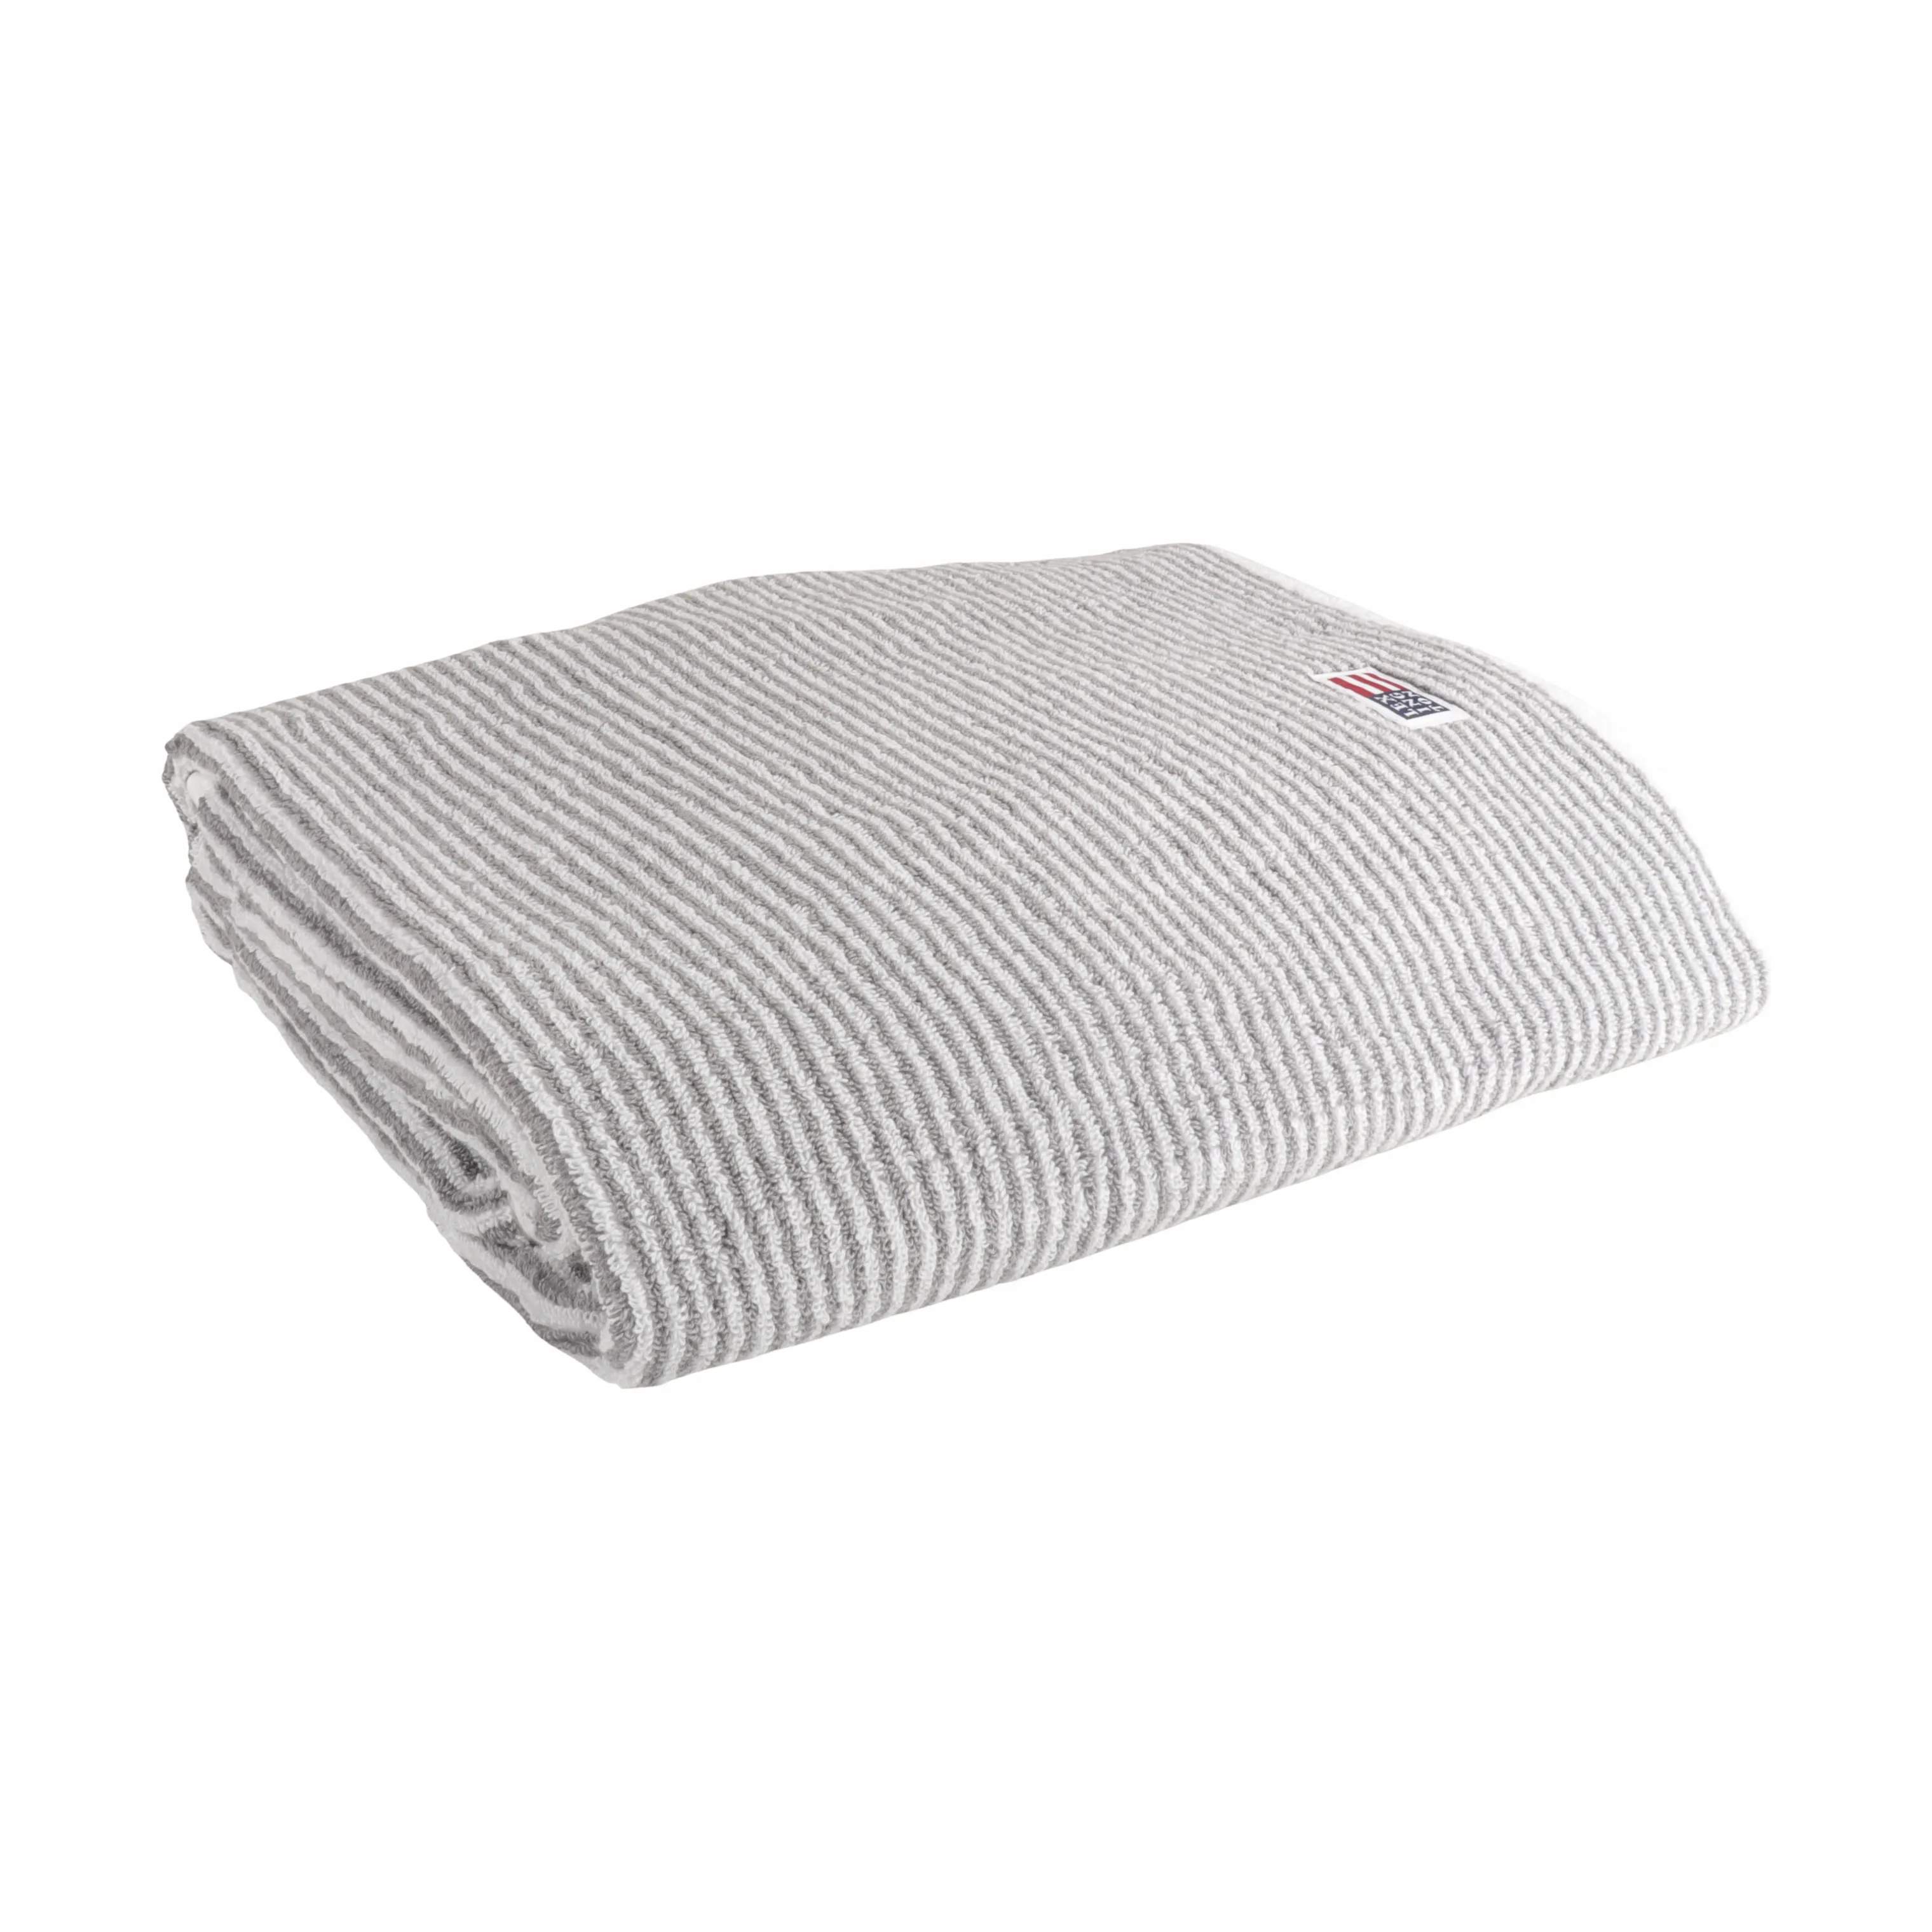 Originals Stribet Håndklæde, white/gray, large